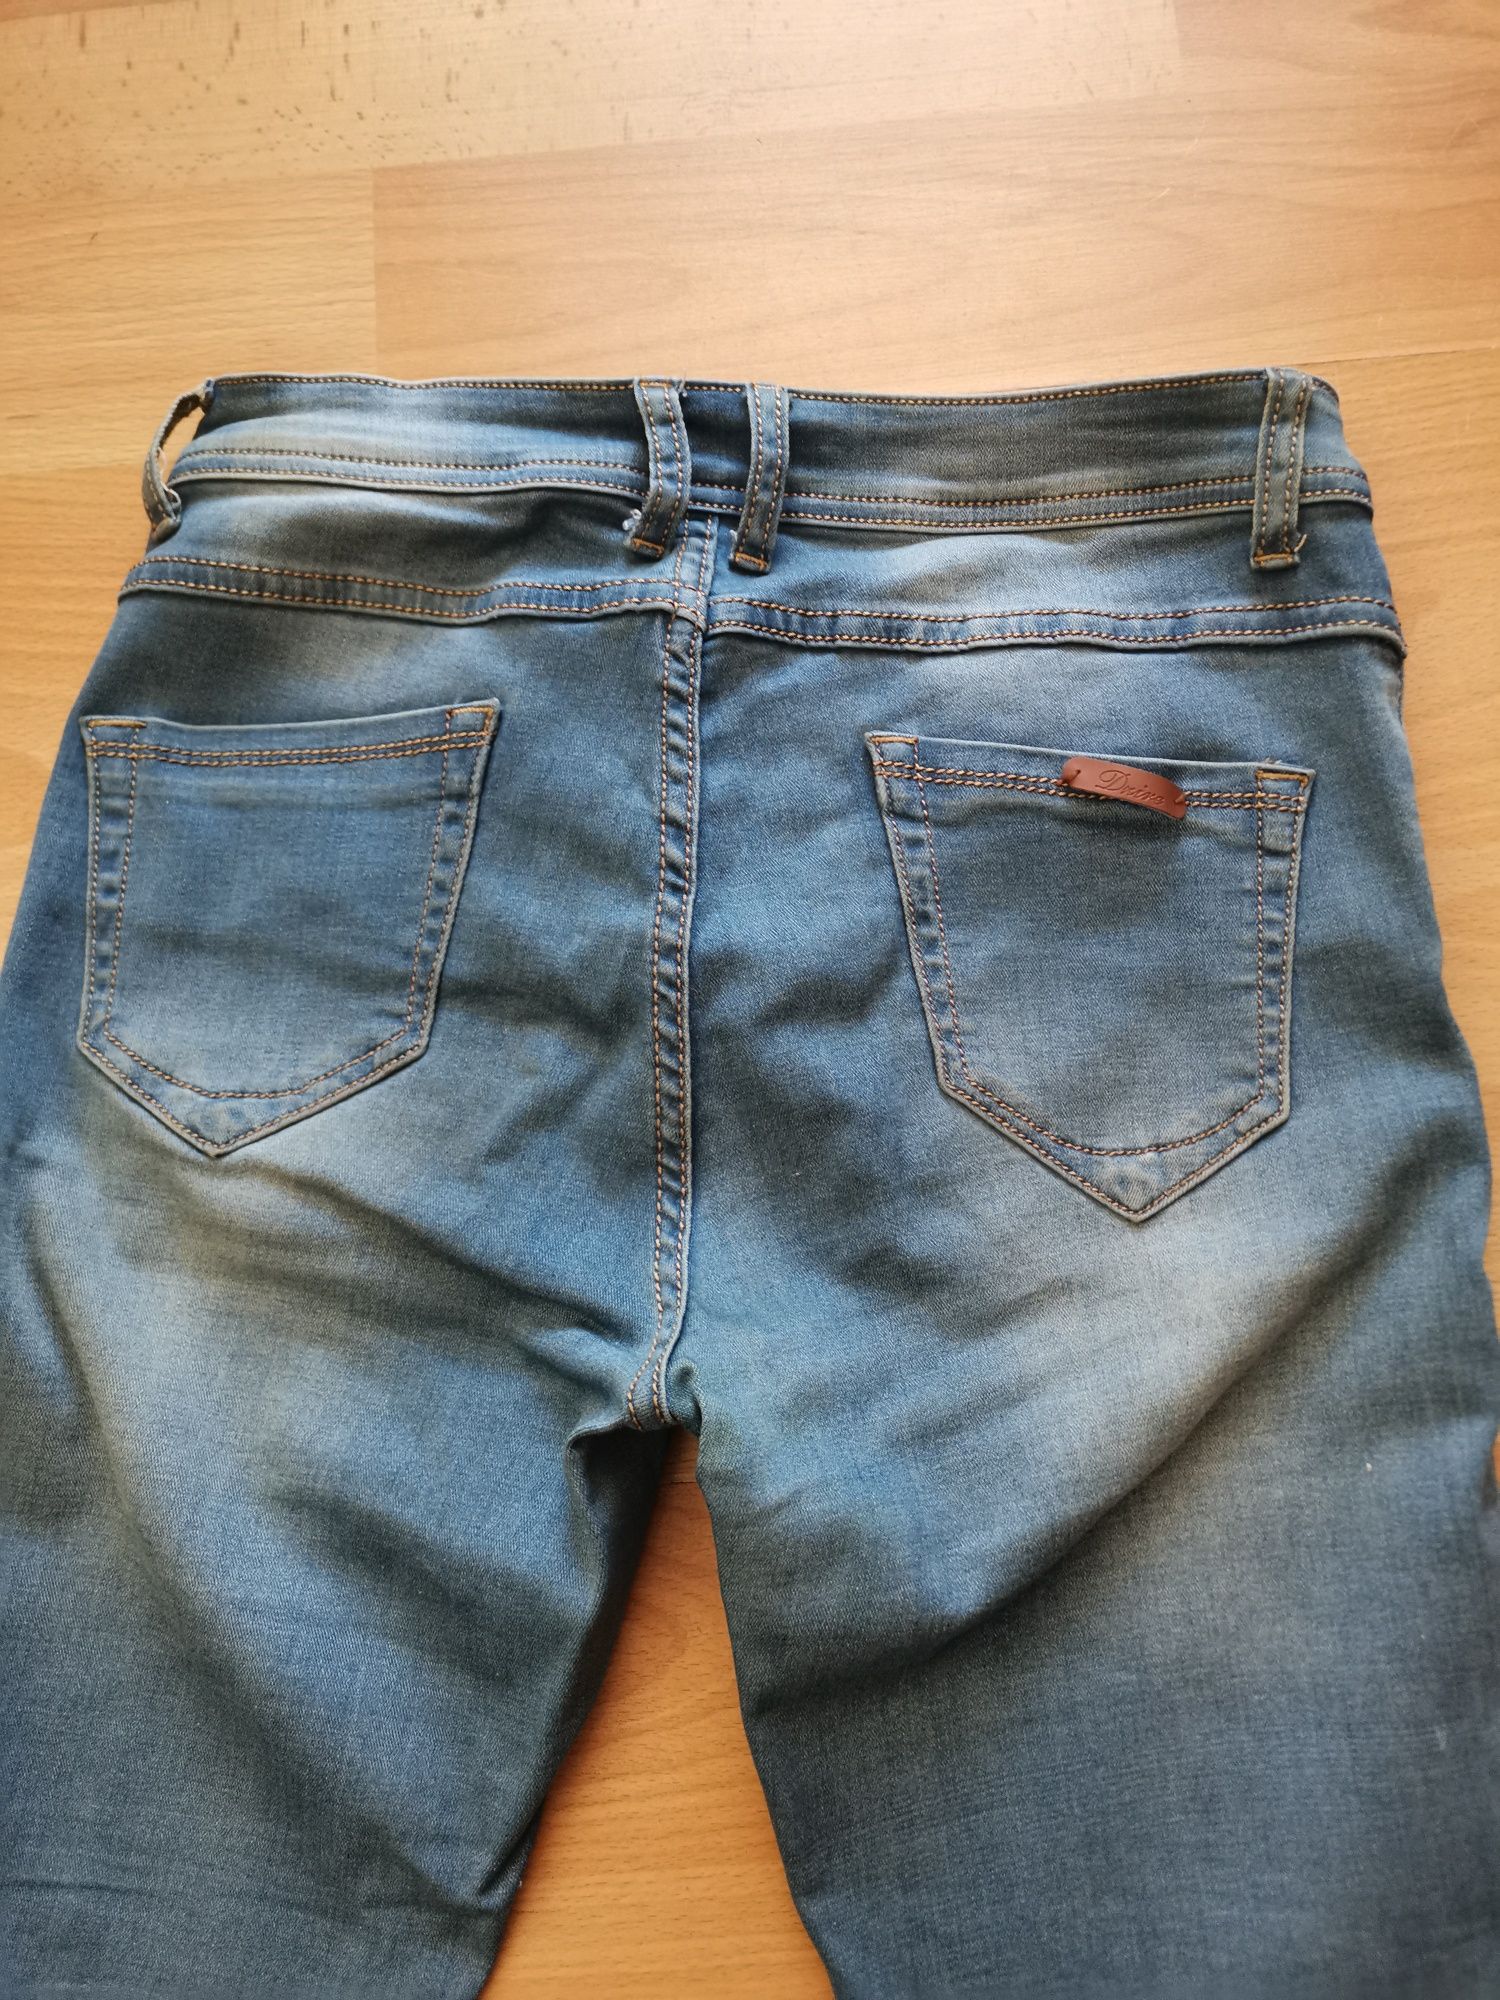 Spodnie damskie jeansy bawełniane niebieskie rozmiar S